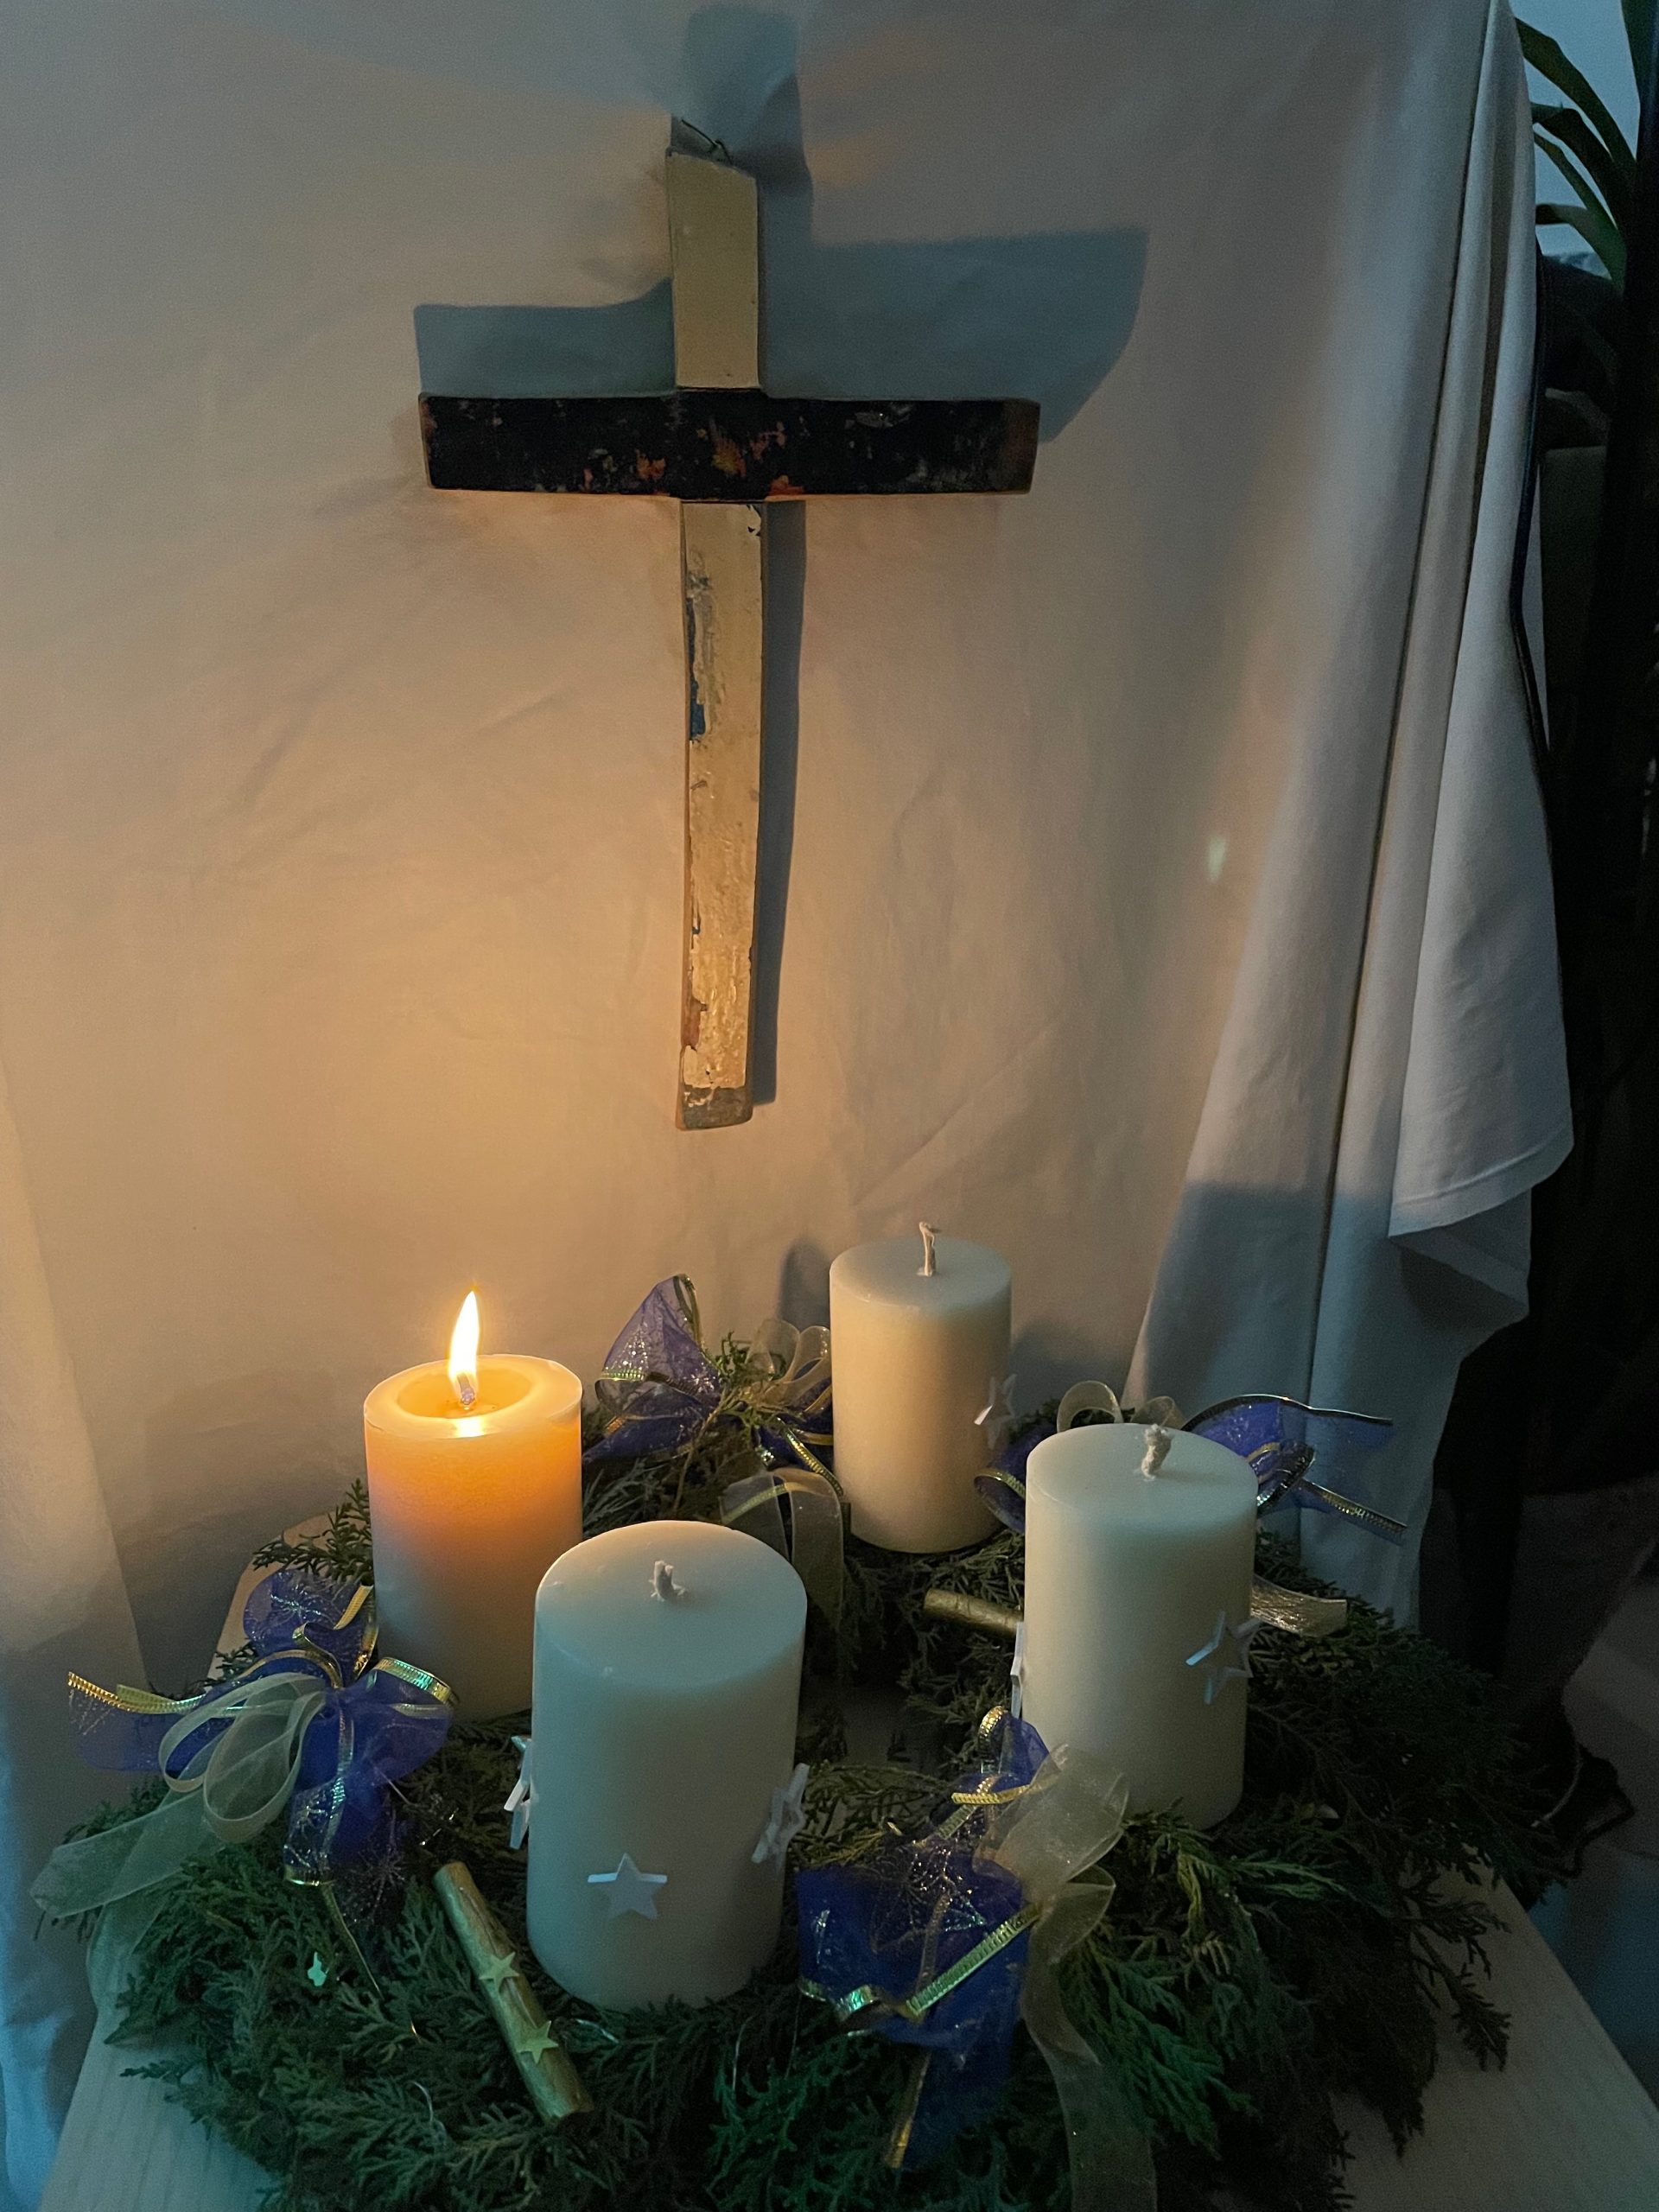 Machet die Tore Weit - Foto von Adventskranz mit weißen Kerzen. Eine brennt. Dahinter ist ein Holzkreuz an der Wand